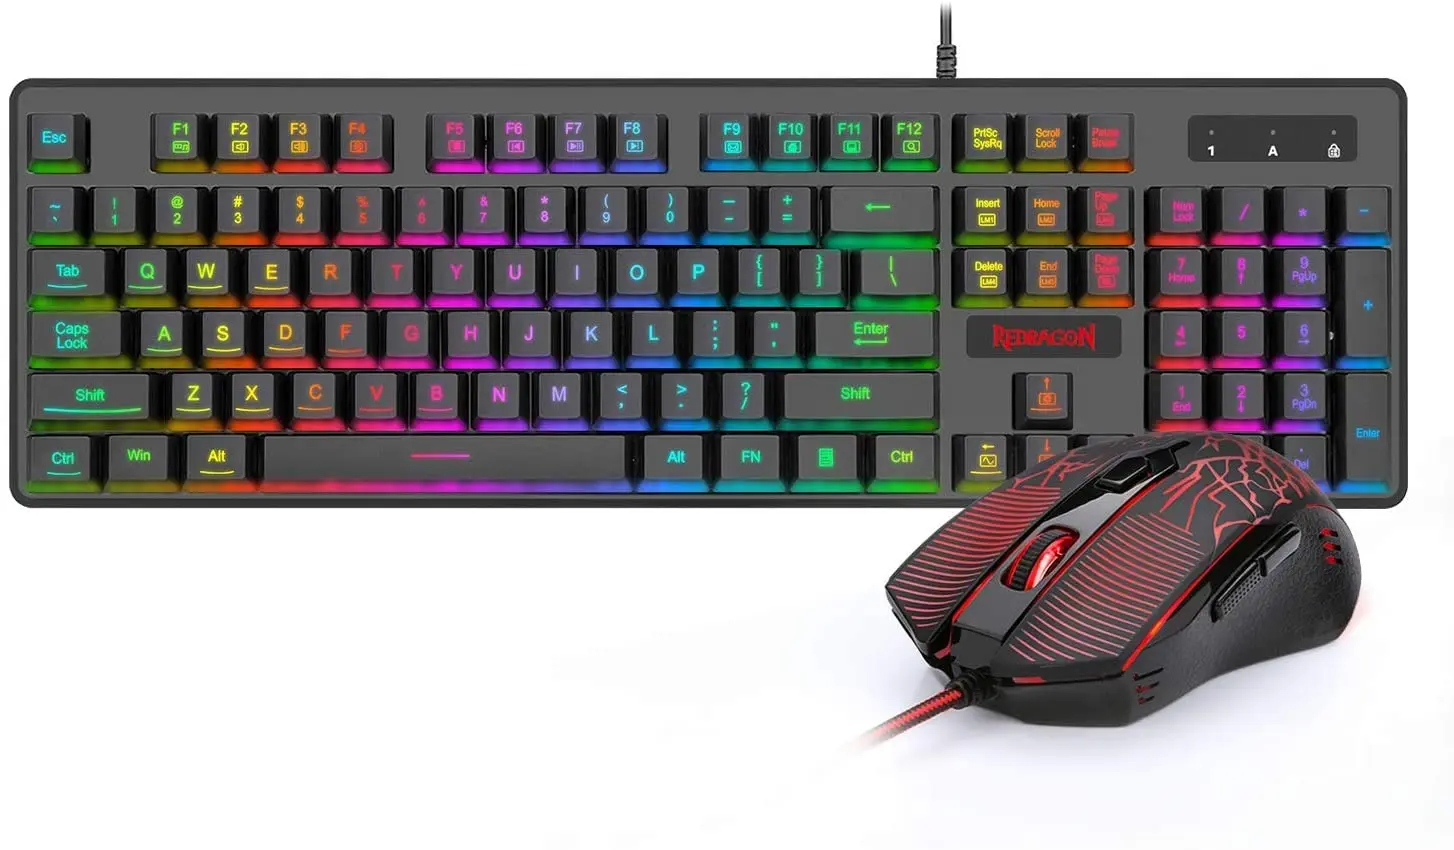 

Игровая клавиатура и мышь Redragon S107, Проводная Механическая клавиатура со светодиодной RGB подсветкой, 3200 DPI, игровая мышь для Windows